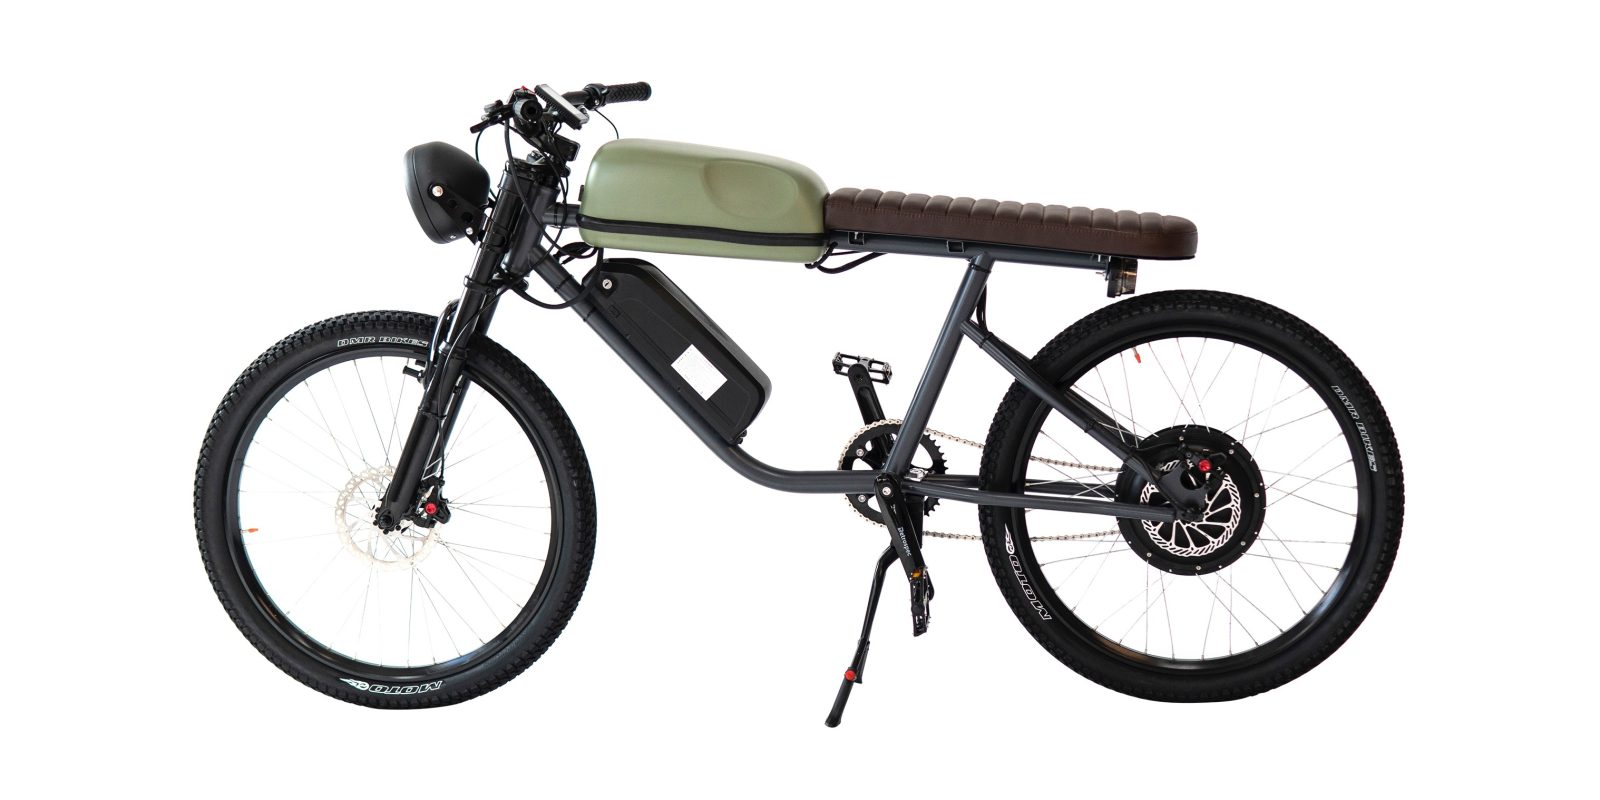 Độc đáo chiếc xe đạp điện trong hình hài chiếc xe máy cổ điển